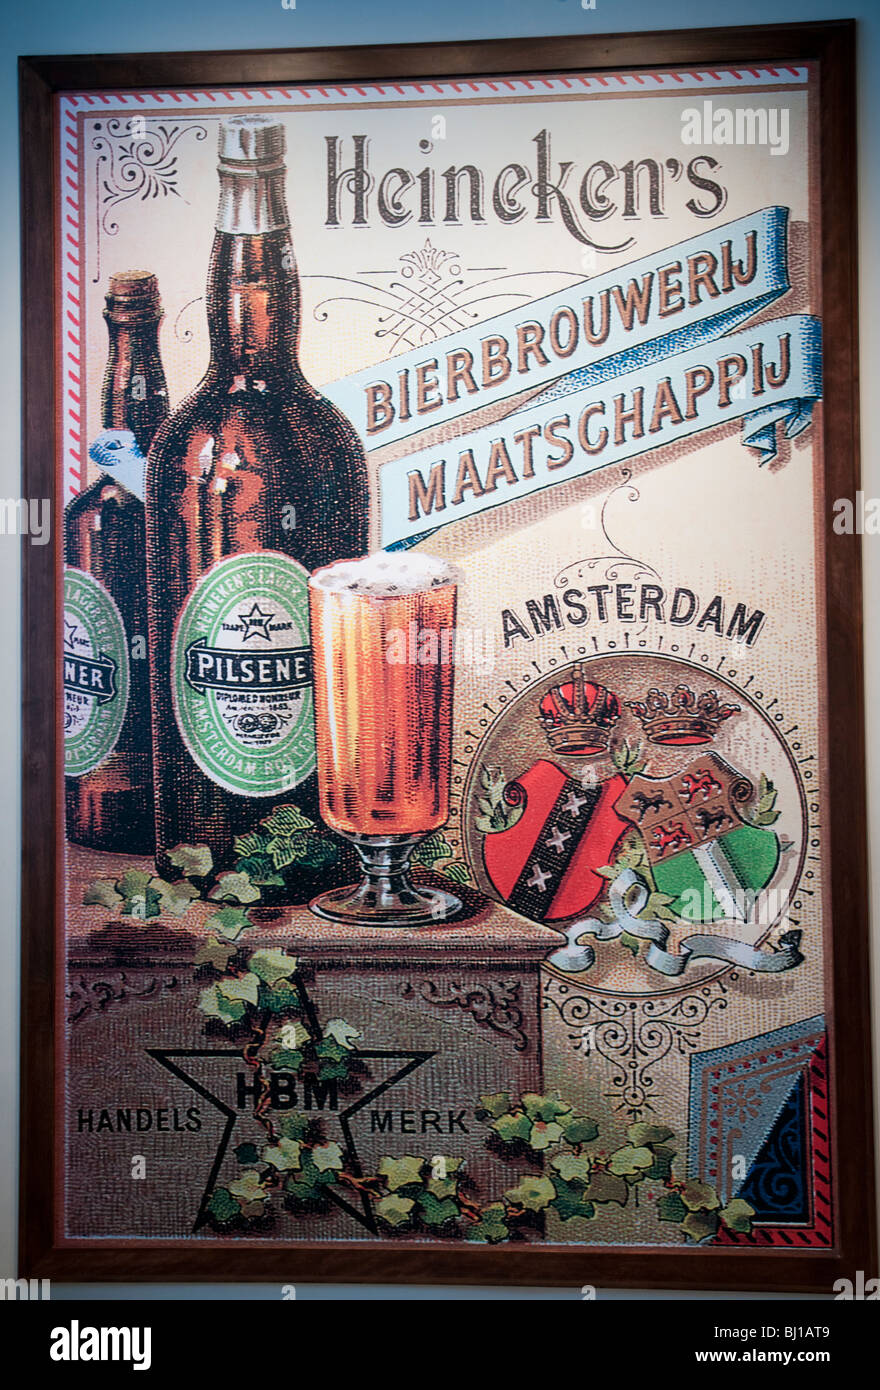 Vintage sign for advertising Heineken beer, Heineken brewery museum, Amsterdam (no property released) Stock Photo